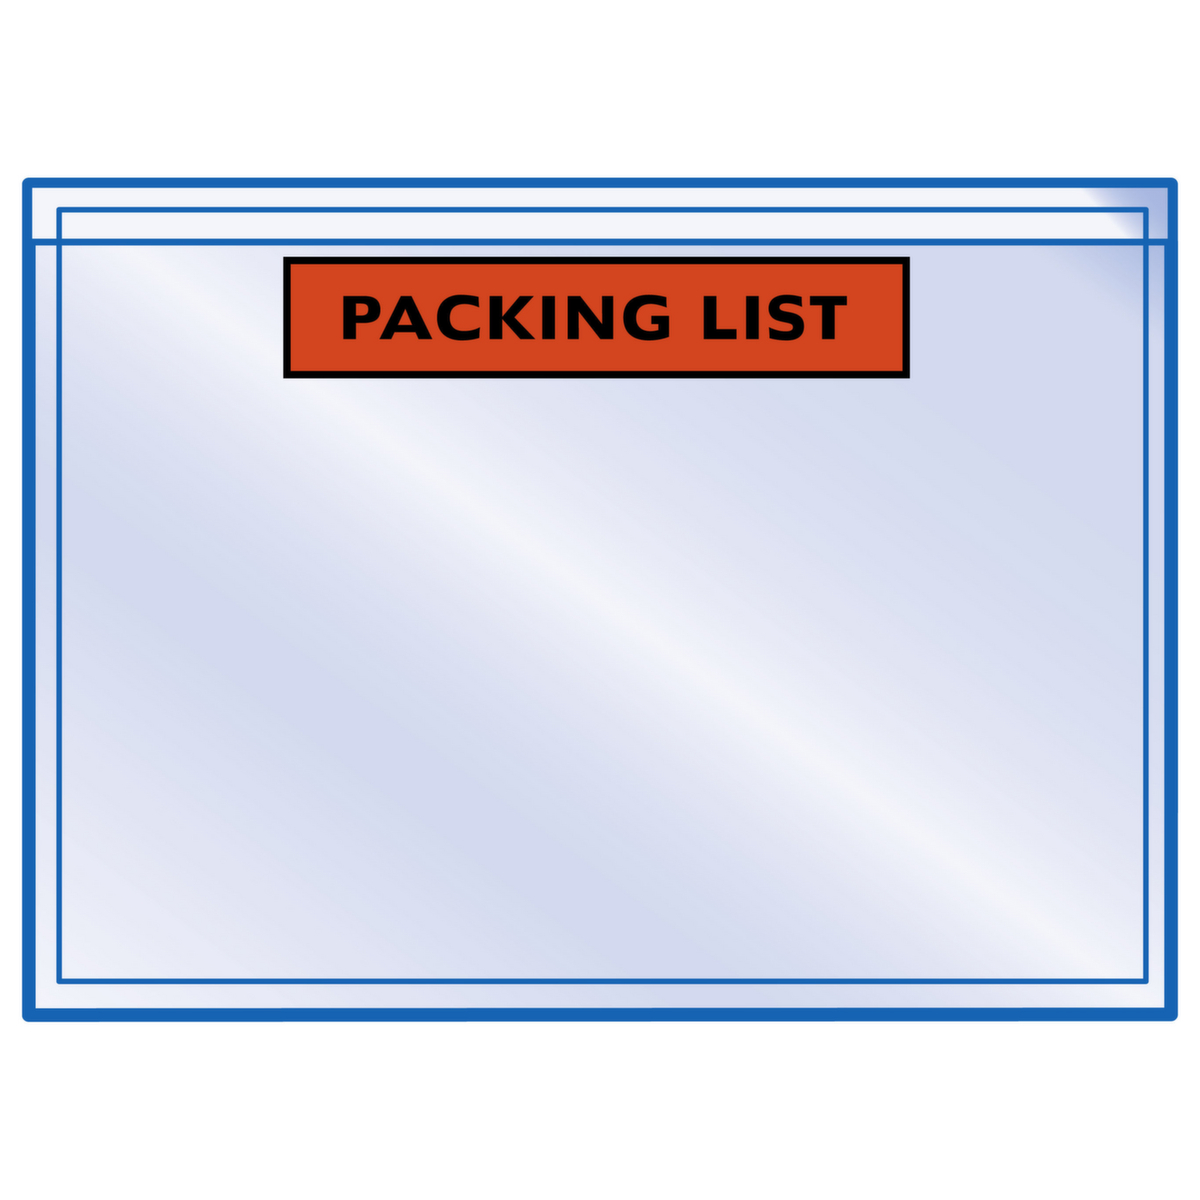 Raja Dokumententasche "Packing List", DIN A6 Standard 1 ZOOM